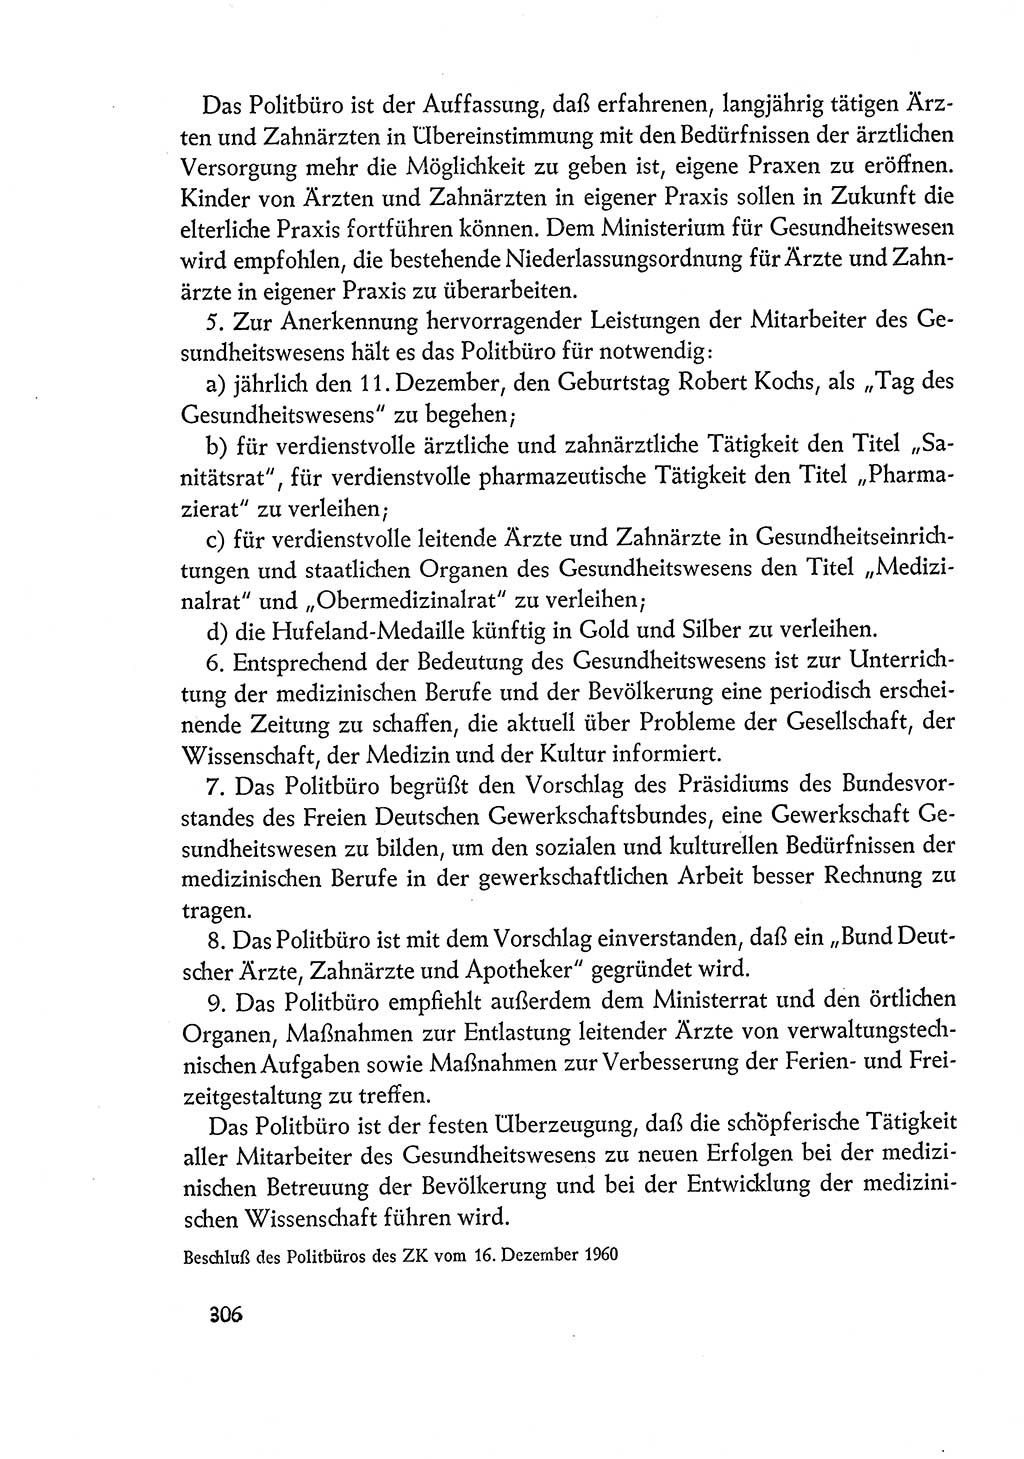 Dokumente der Sozialistischen Einheitspartei Deutschlands (SED) [Deutsche Demokratische Republik (DDR)] 1960-1961, Seite 306 (Dok. SED DDR 1960-1961, S. 306)